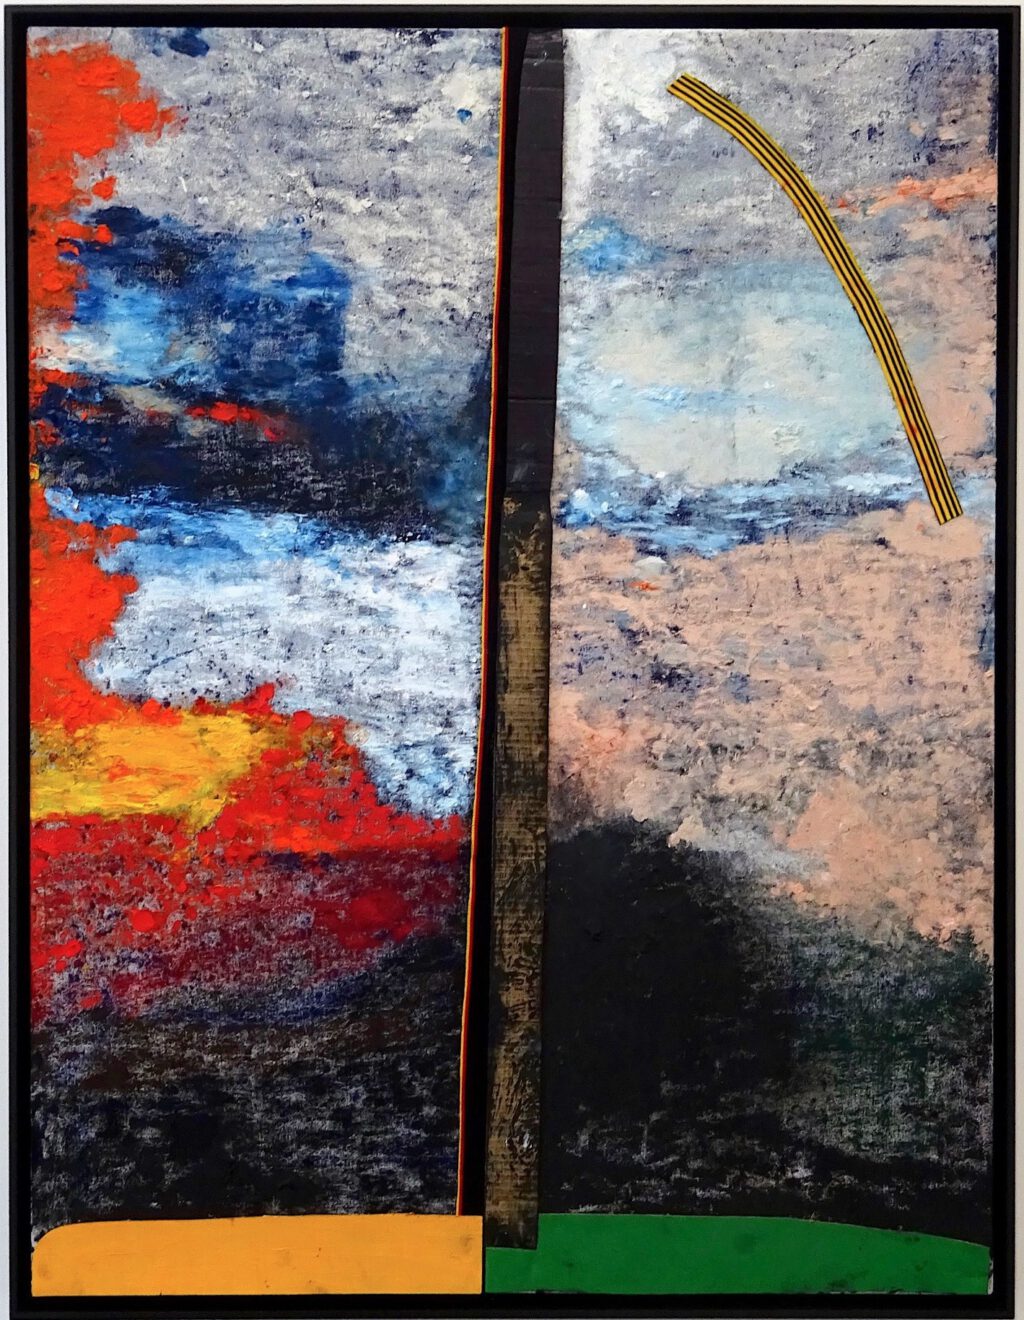 桶田コレクション展 Sterling Ruby スターリング・ルビー “VERT.PROUN (6606).” 2018, Acrylic, oil, elastic and cardboard on canvas, 149.9 x 115.6 x 8.3 cm